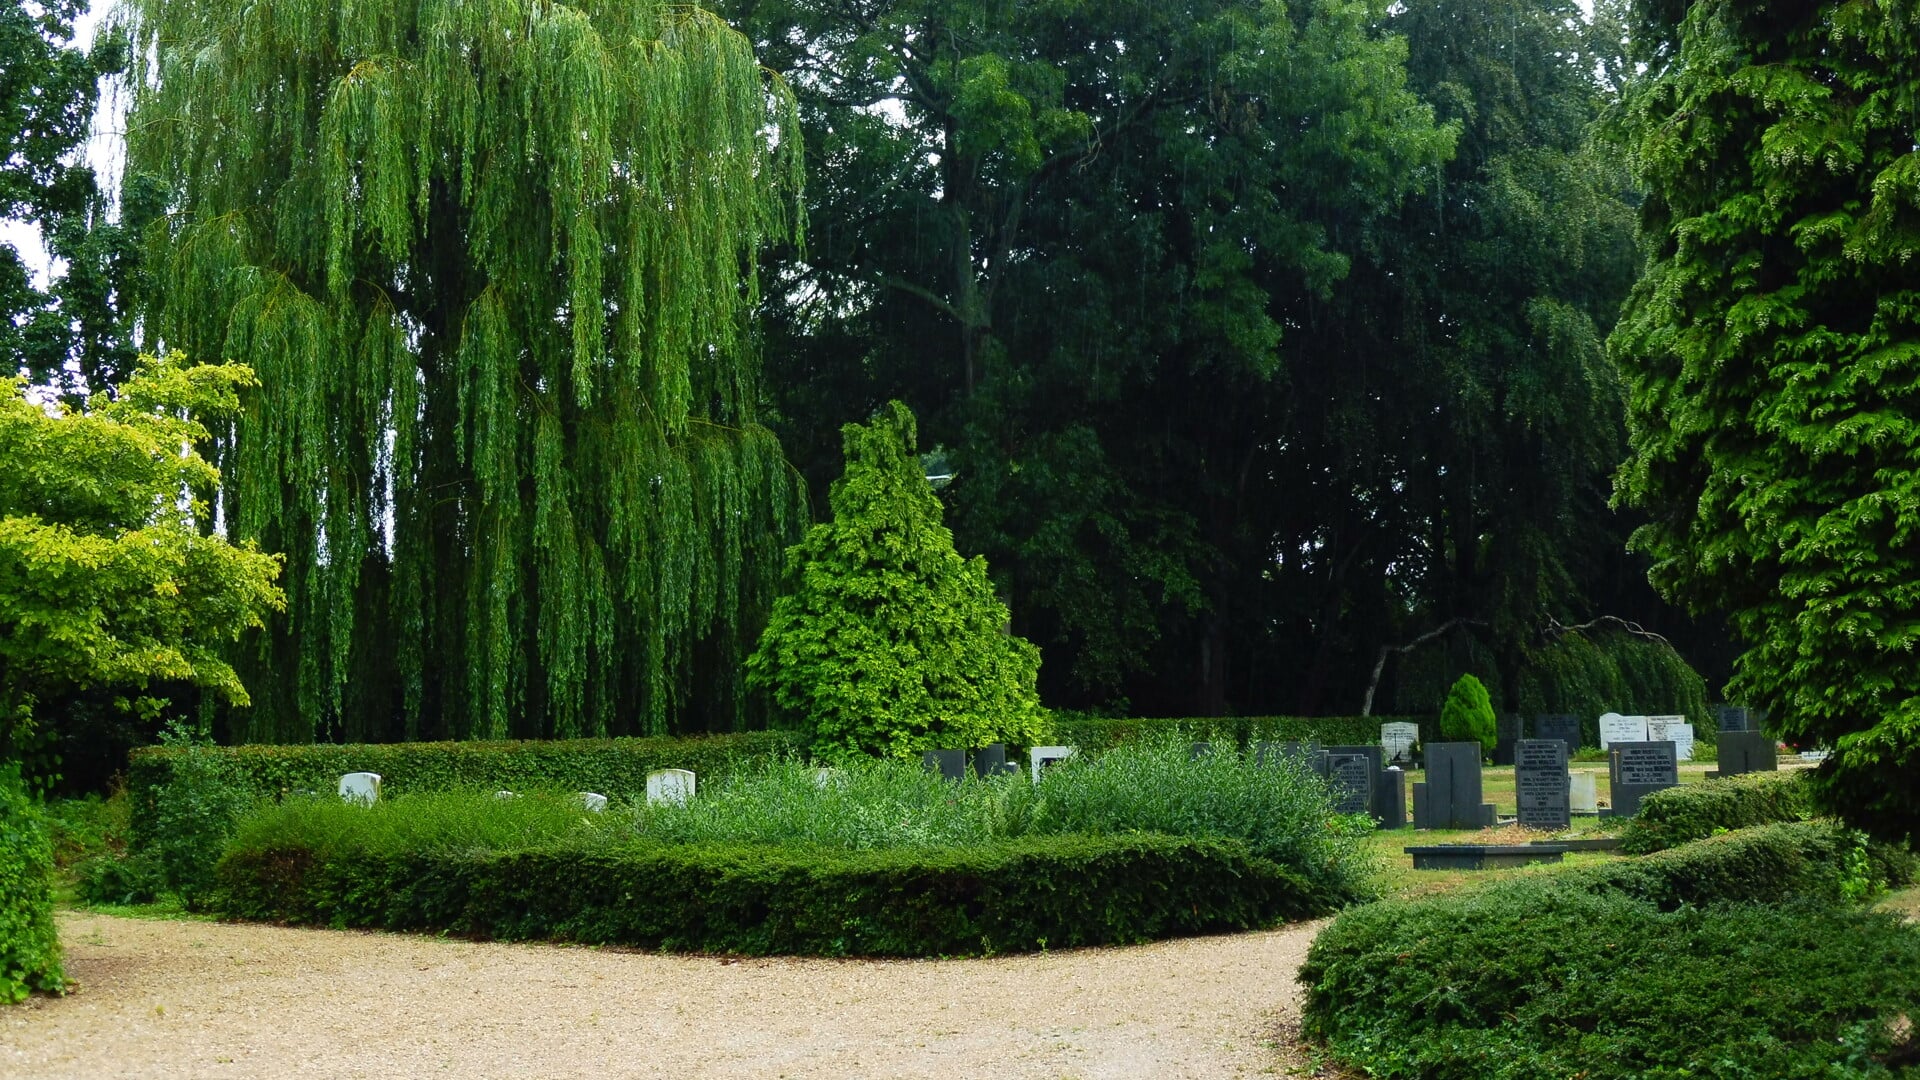 De begraafplaats is een groene oase.